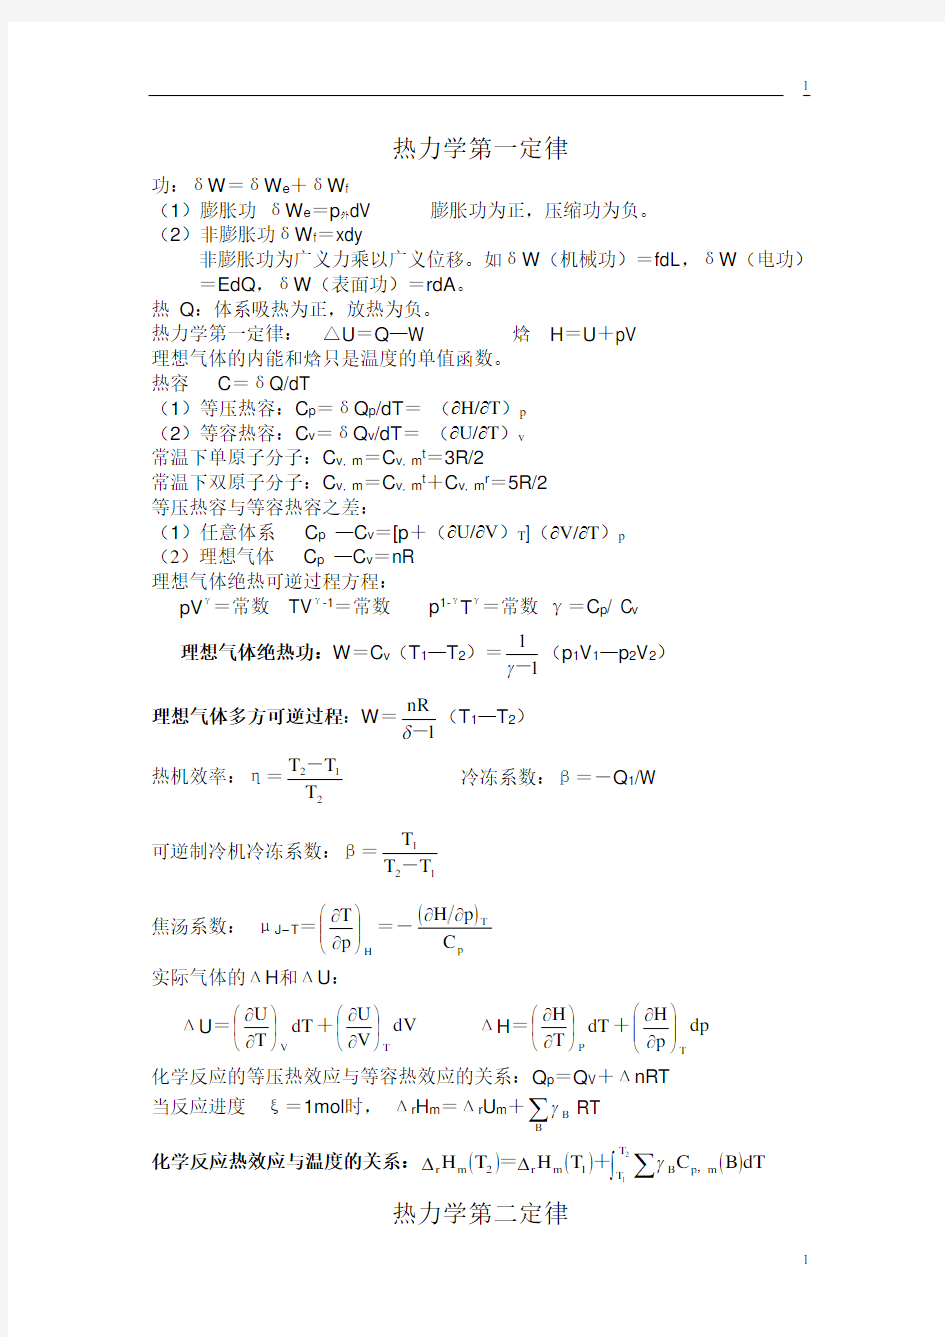 【考研必备】物理化学公式集(傅献彩_南京大学第5版)